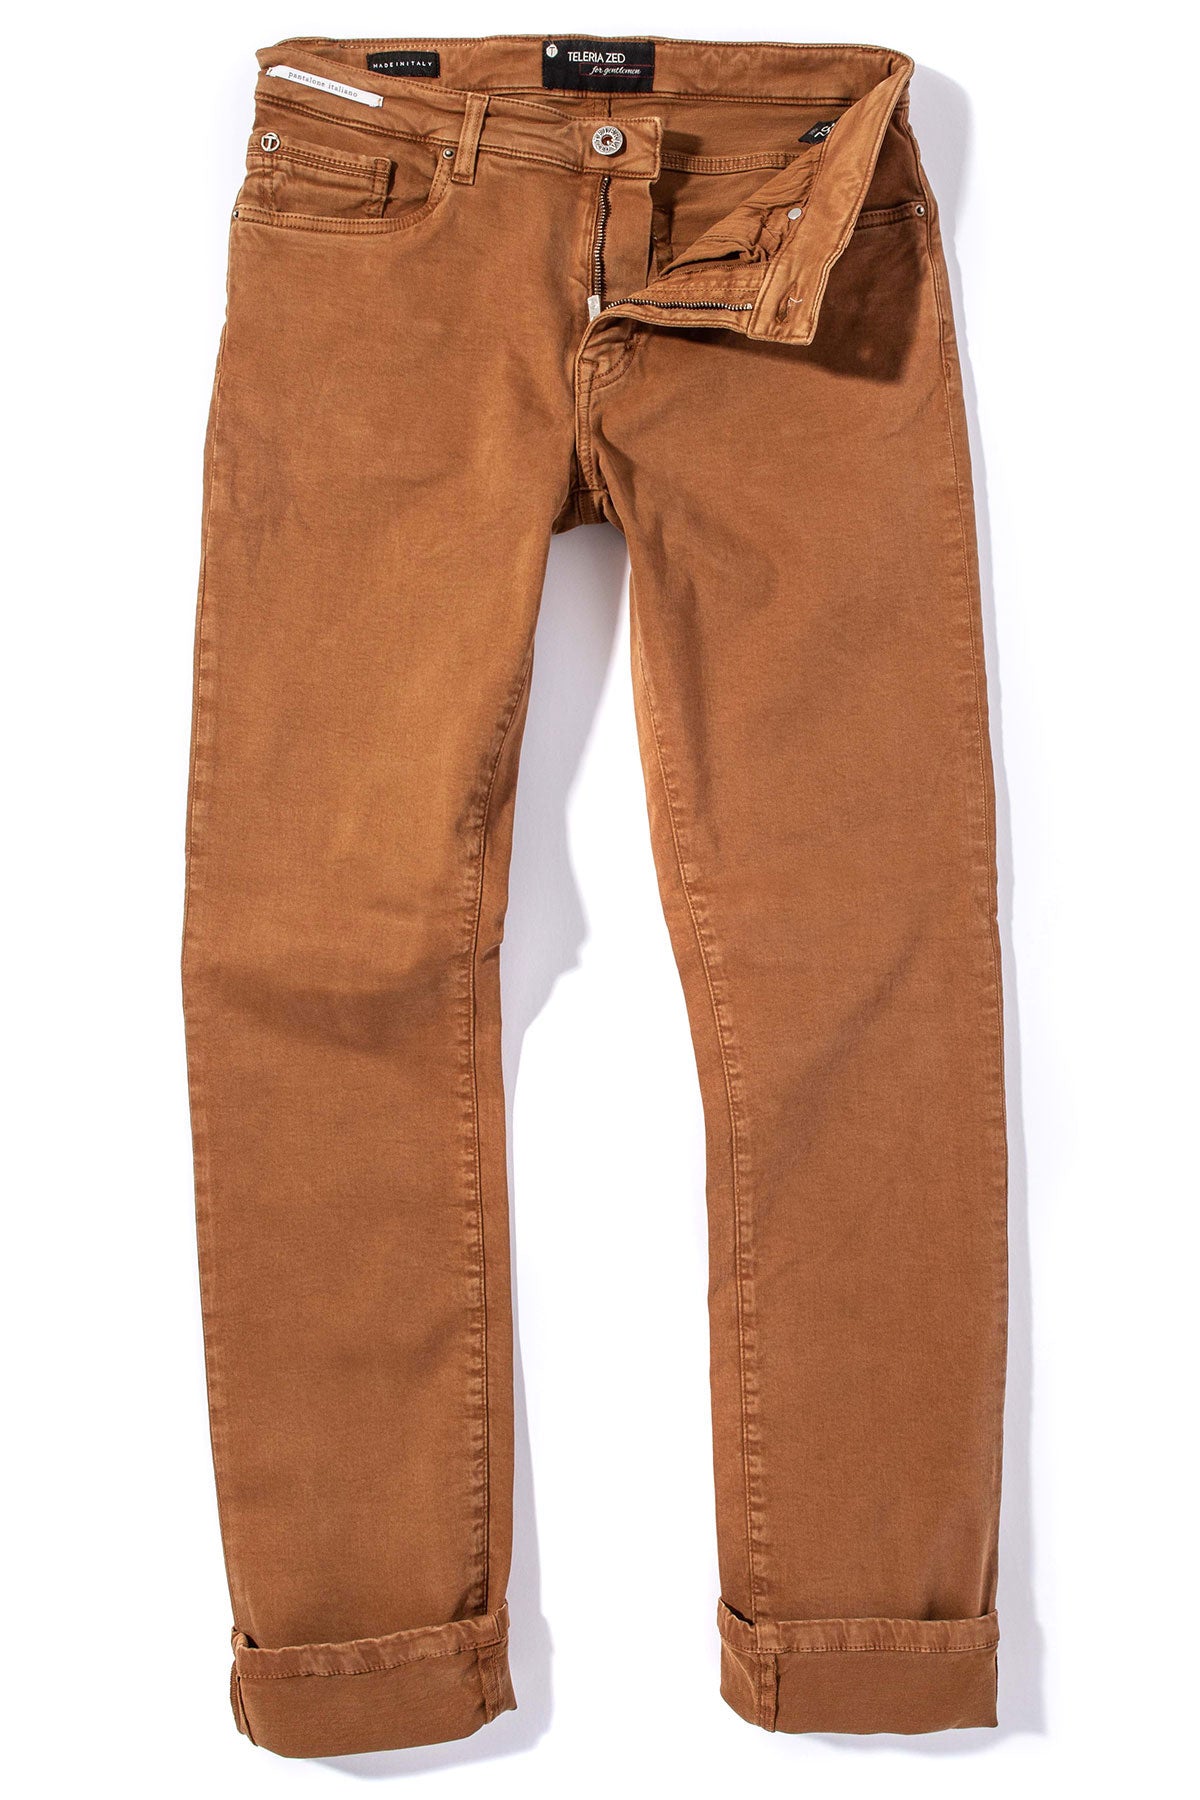 Clothing Sale | Mens linen pants, Linen shirt men, Linen trousers for men